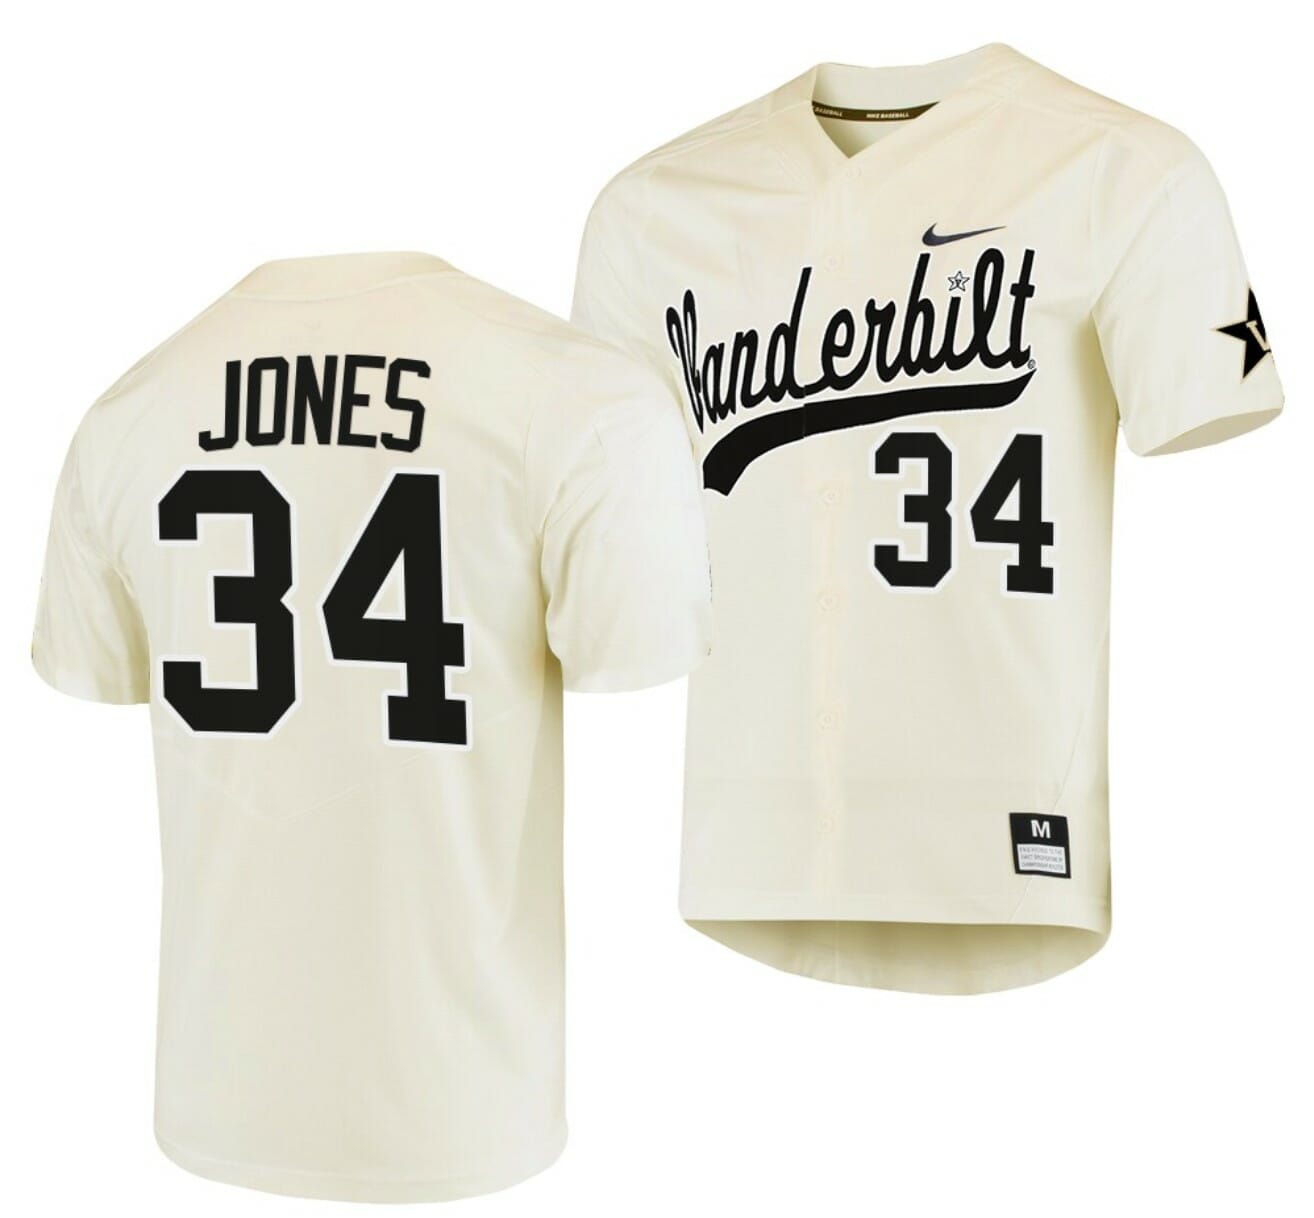 Trending] Get New Spencer Jones Jersey Vanderbilt Cream #34